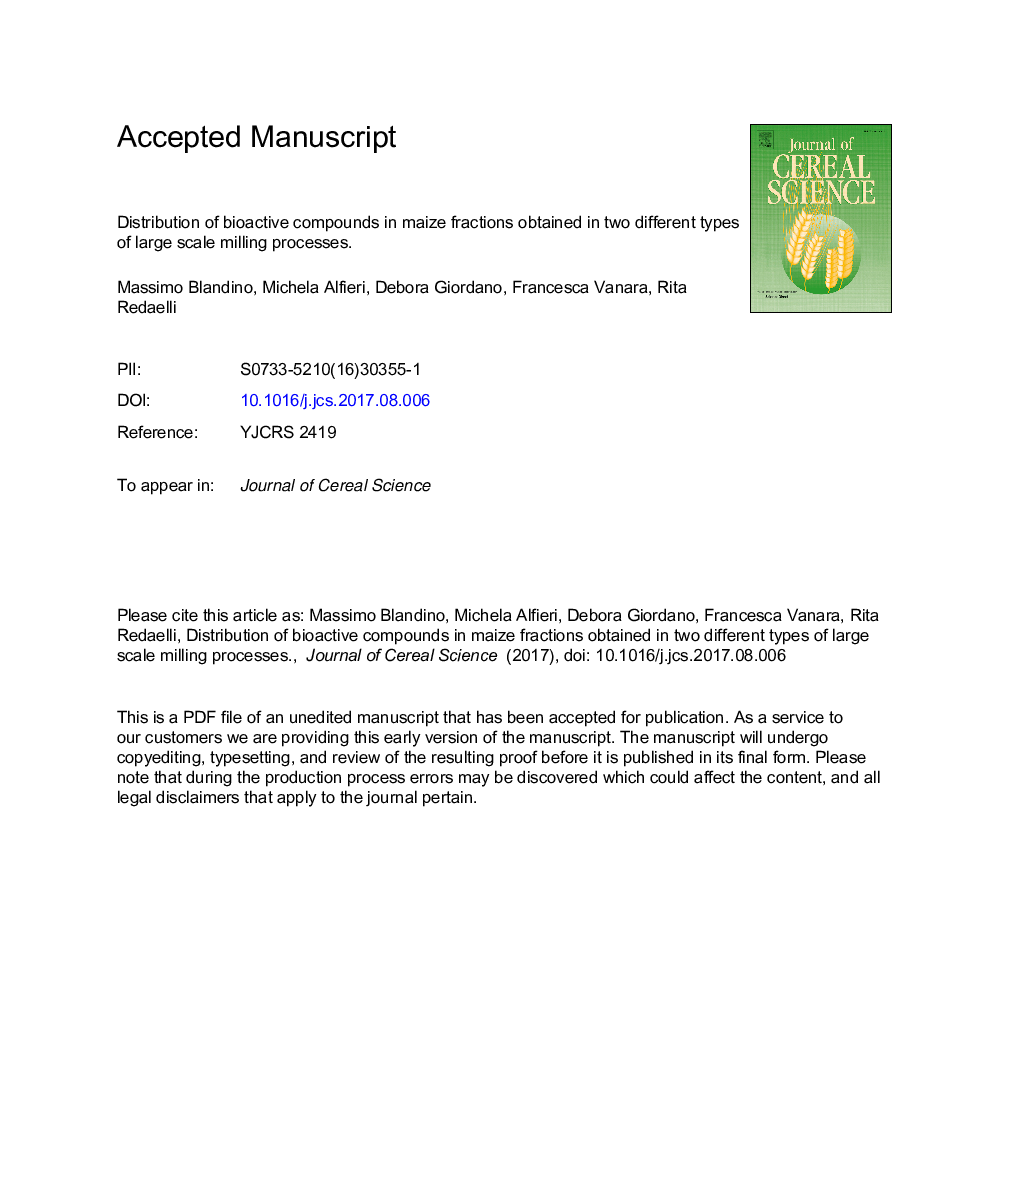 توزیع ترکیبات زیست فعال در فریزر ذرت به دست آمده در دو نوع مختلف از فرایندهای آسیاب بزرگ 